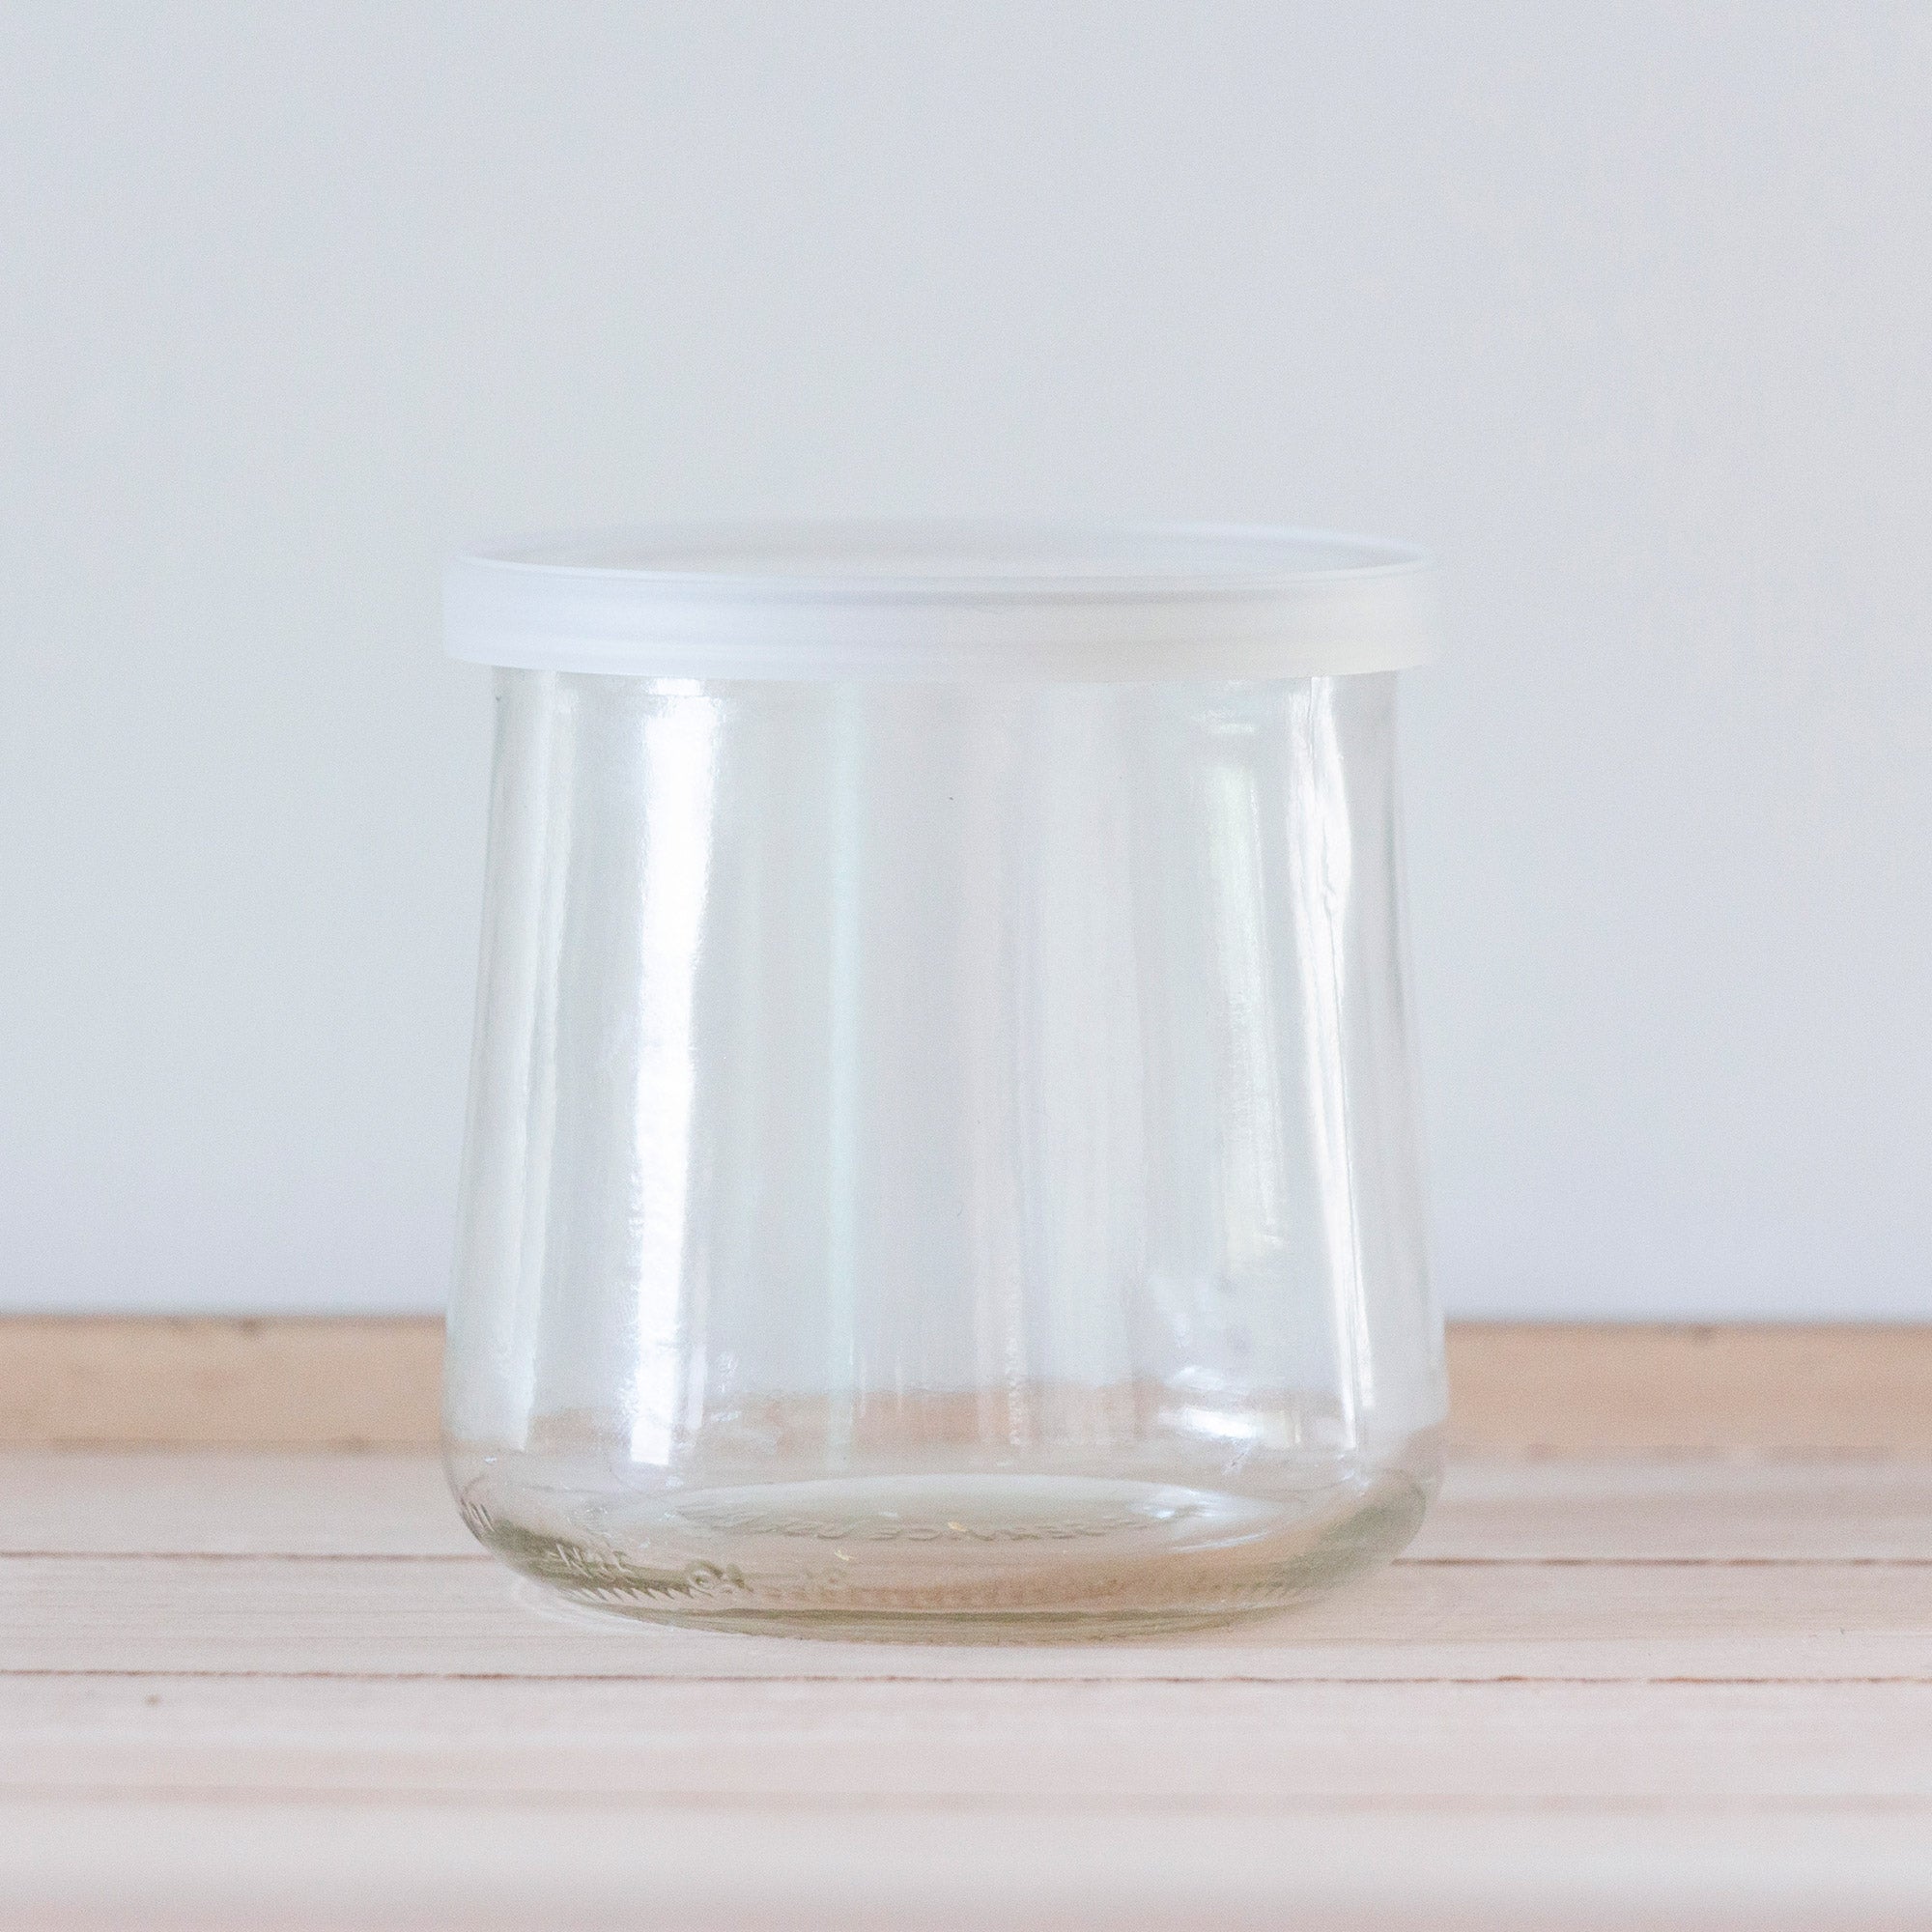 New OUI Yogurt Glass Jar Clear Lids 20pcs/bag(Not For The Liquids)